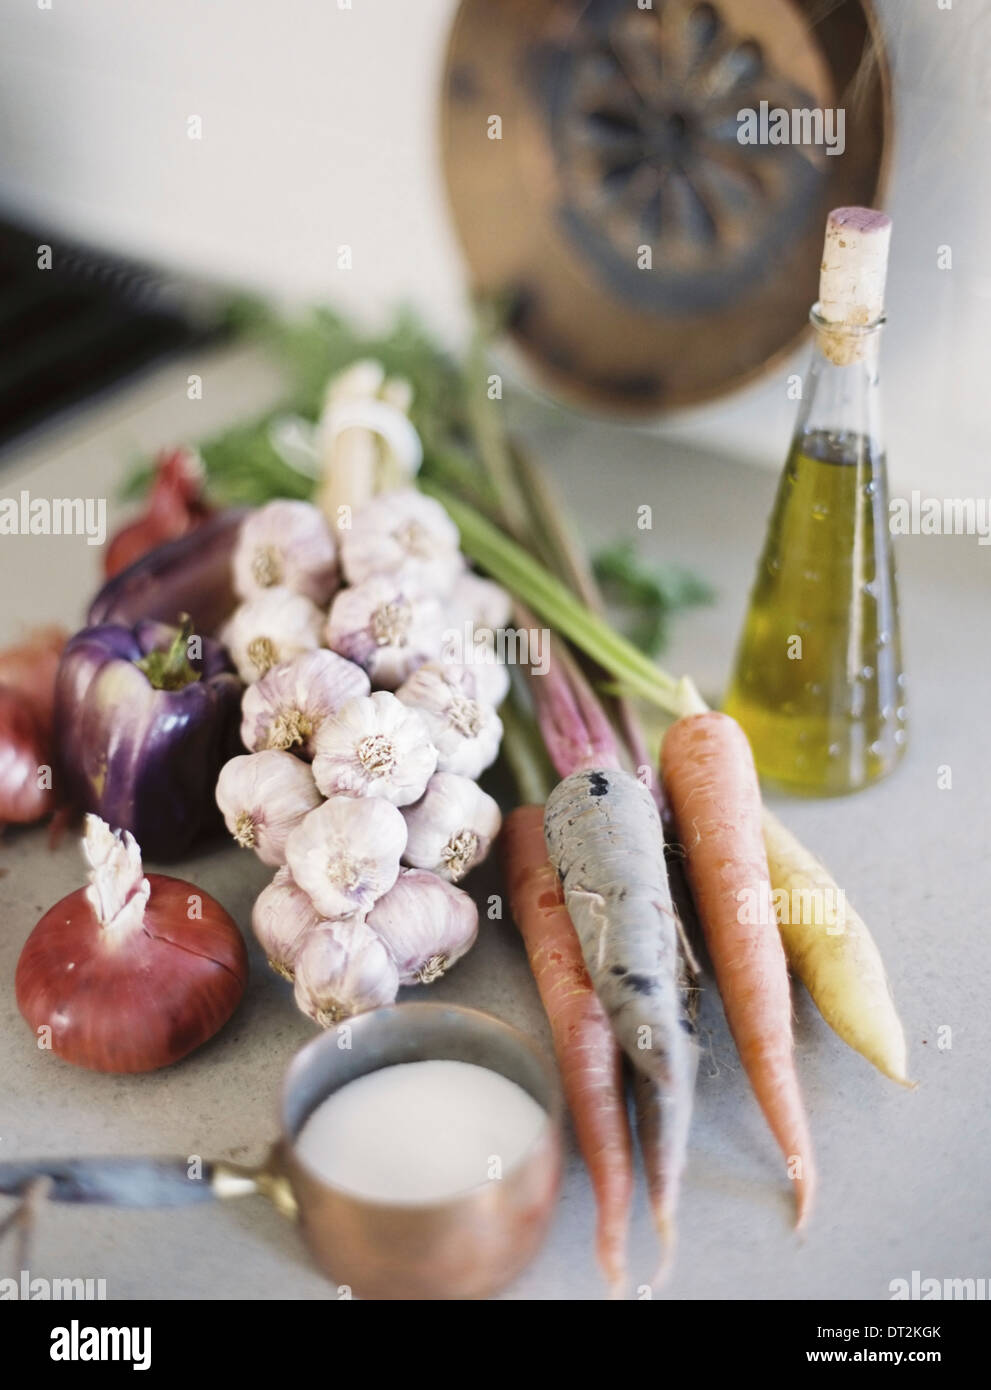 Eine Tischplatte A Gruppe von frischem Bio-Gemüse Karotten und Zwiebeln Knoblauch und Paprika A Flasche mit Öl und Kupfer Pfanne Sauce Stockfoto